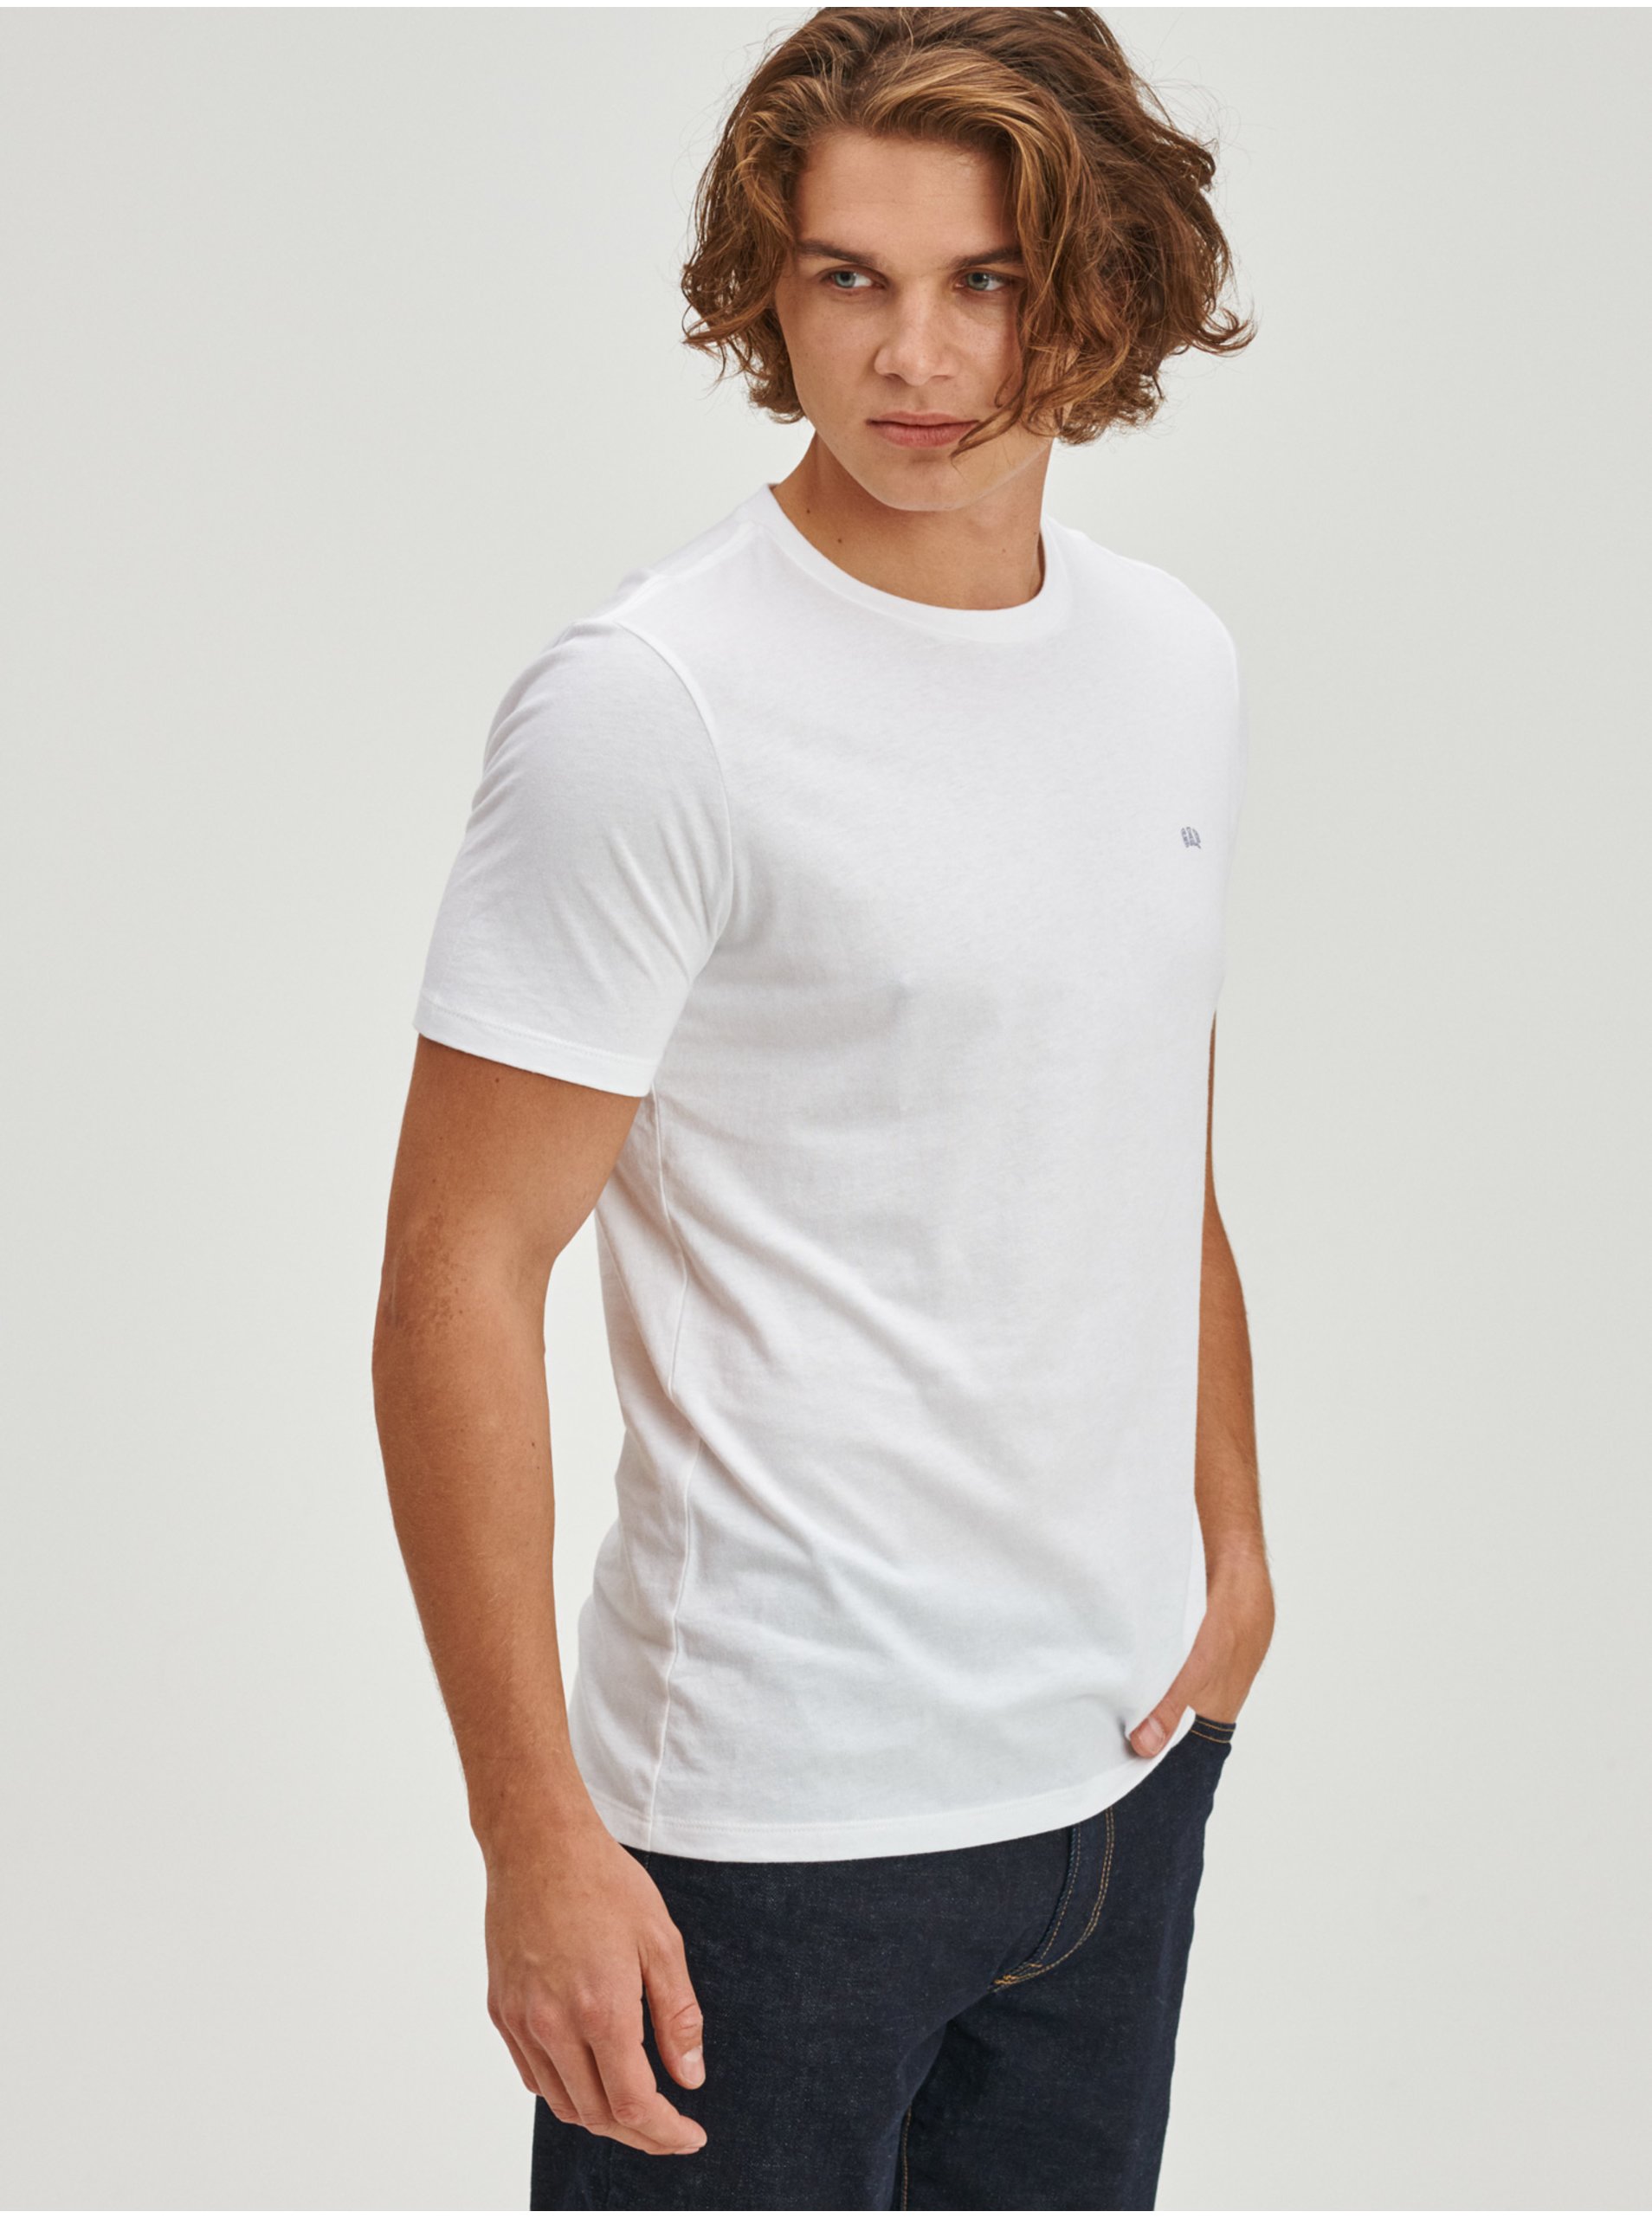 E-shop Bílá pánská trička s krátkým rukávem, 3ks GAP